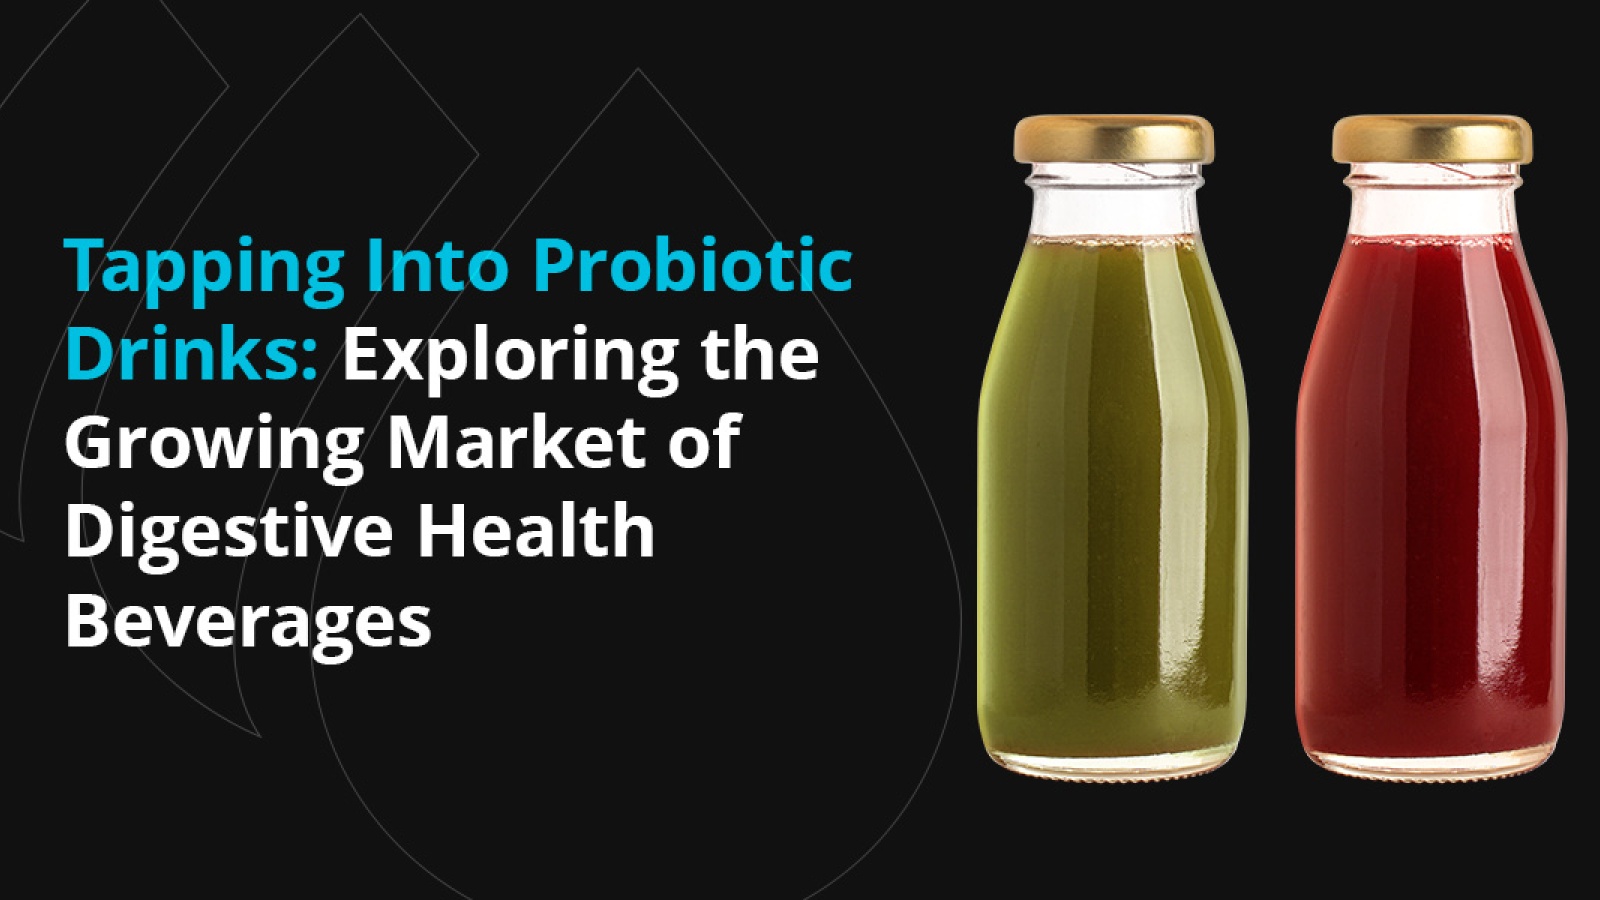 Our Products: Delicious, Convenient Probiotics